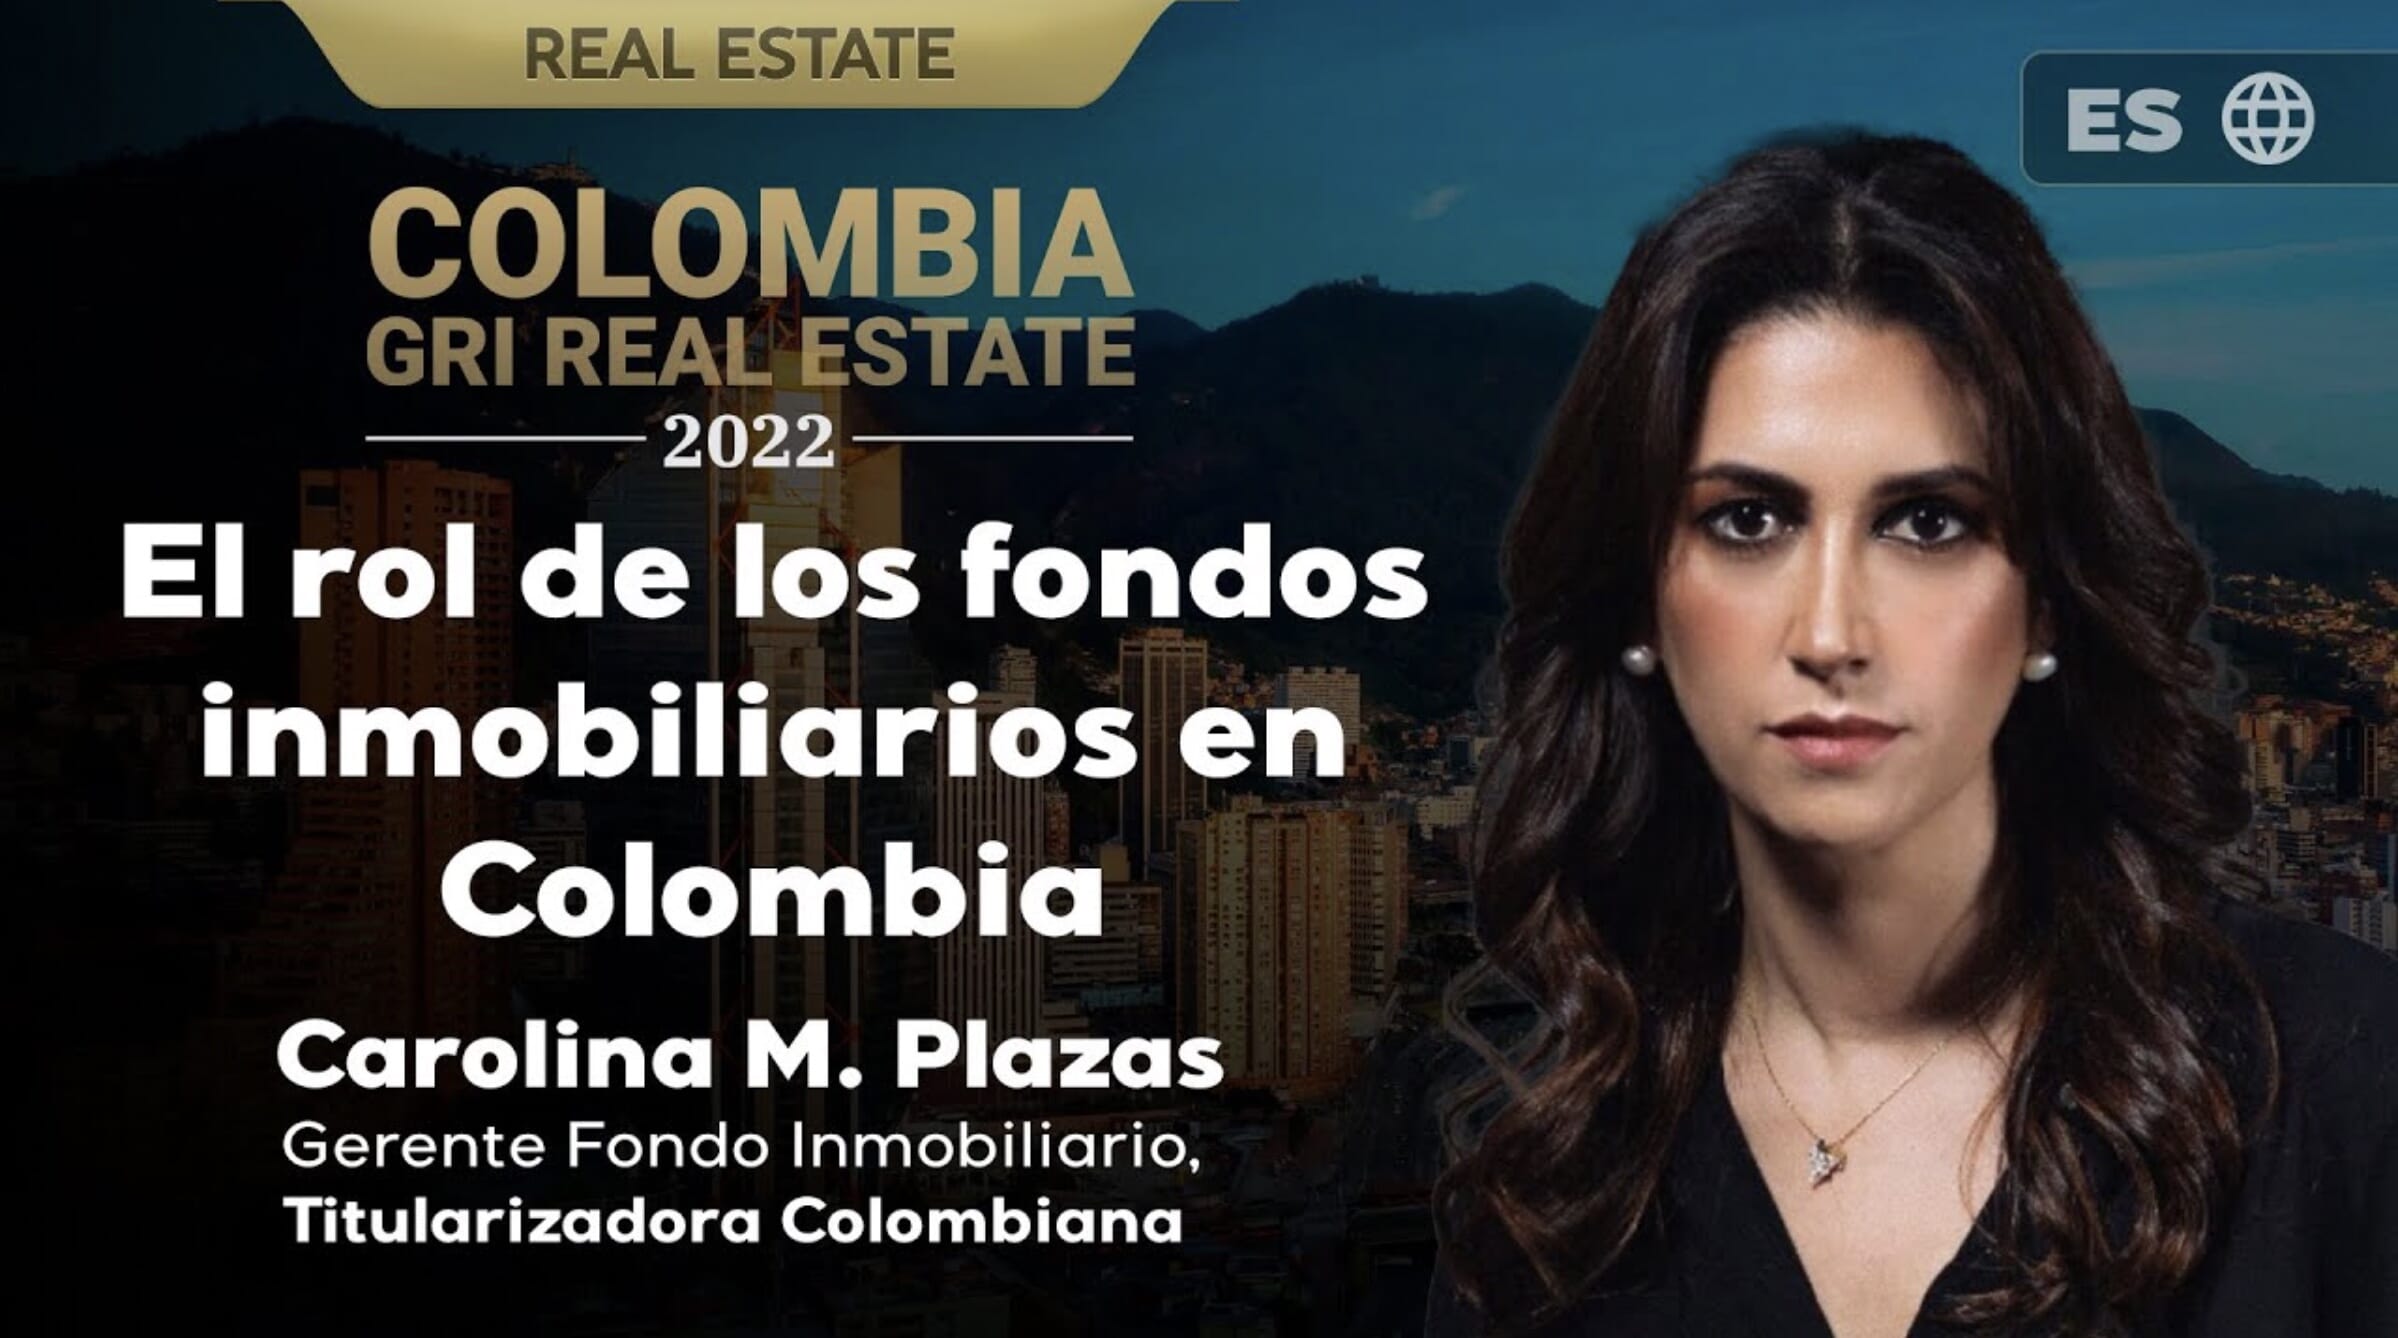 El rol de los fondos inmobiliarios en el impulso del sector en Colombia | ES